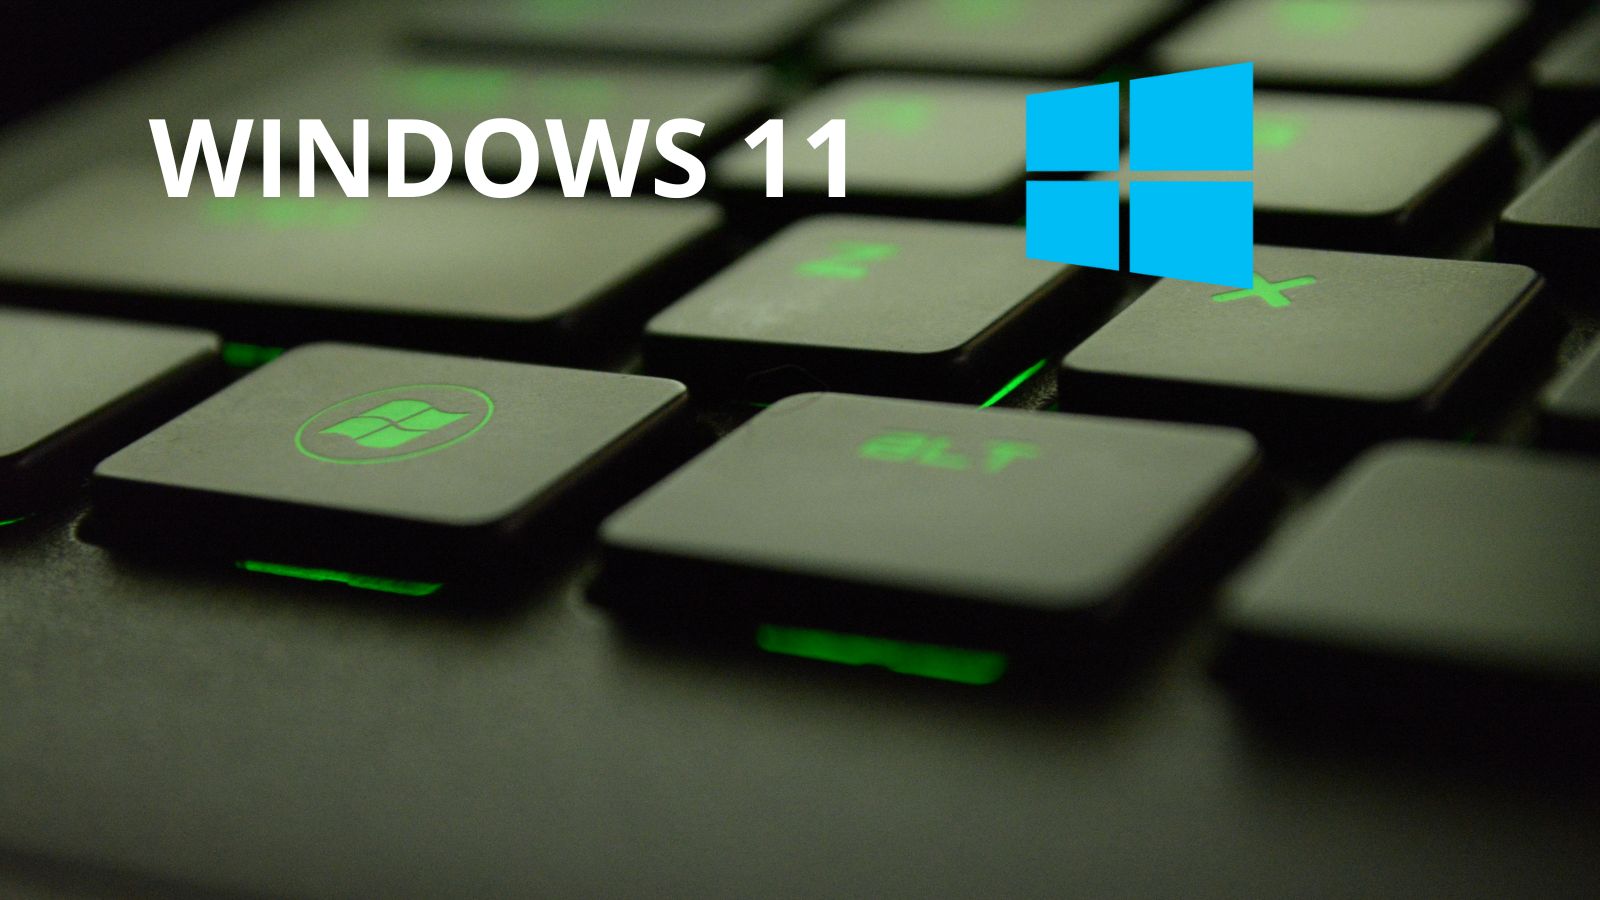 Windows 11, novità sull' aggiornamento